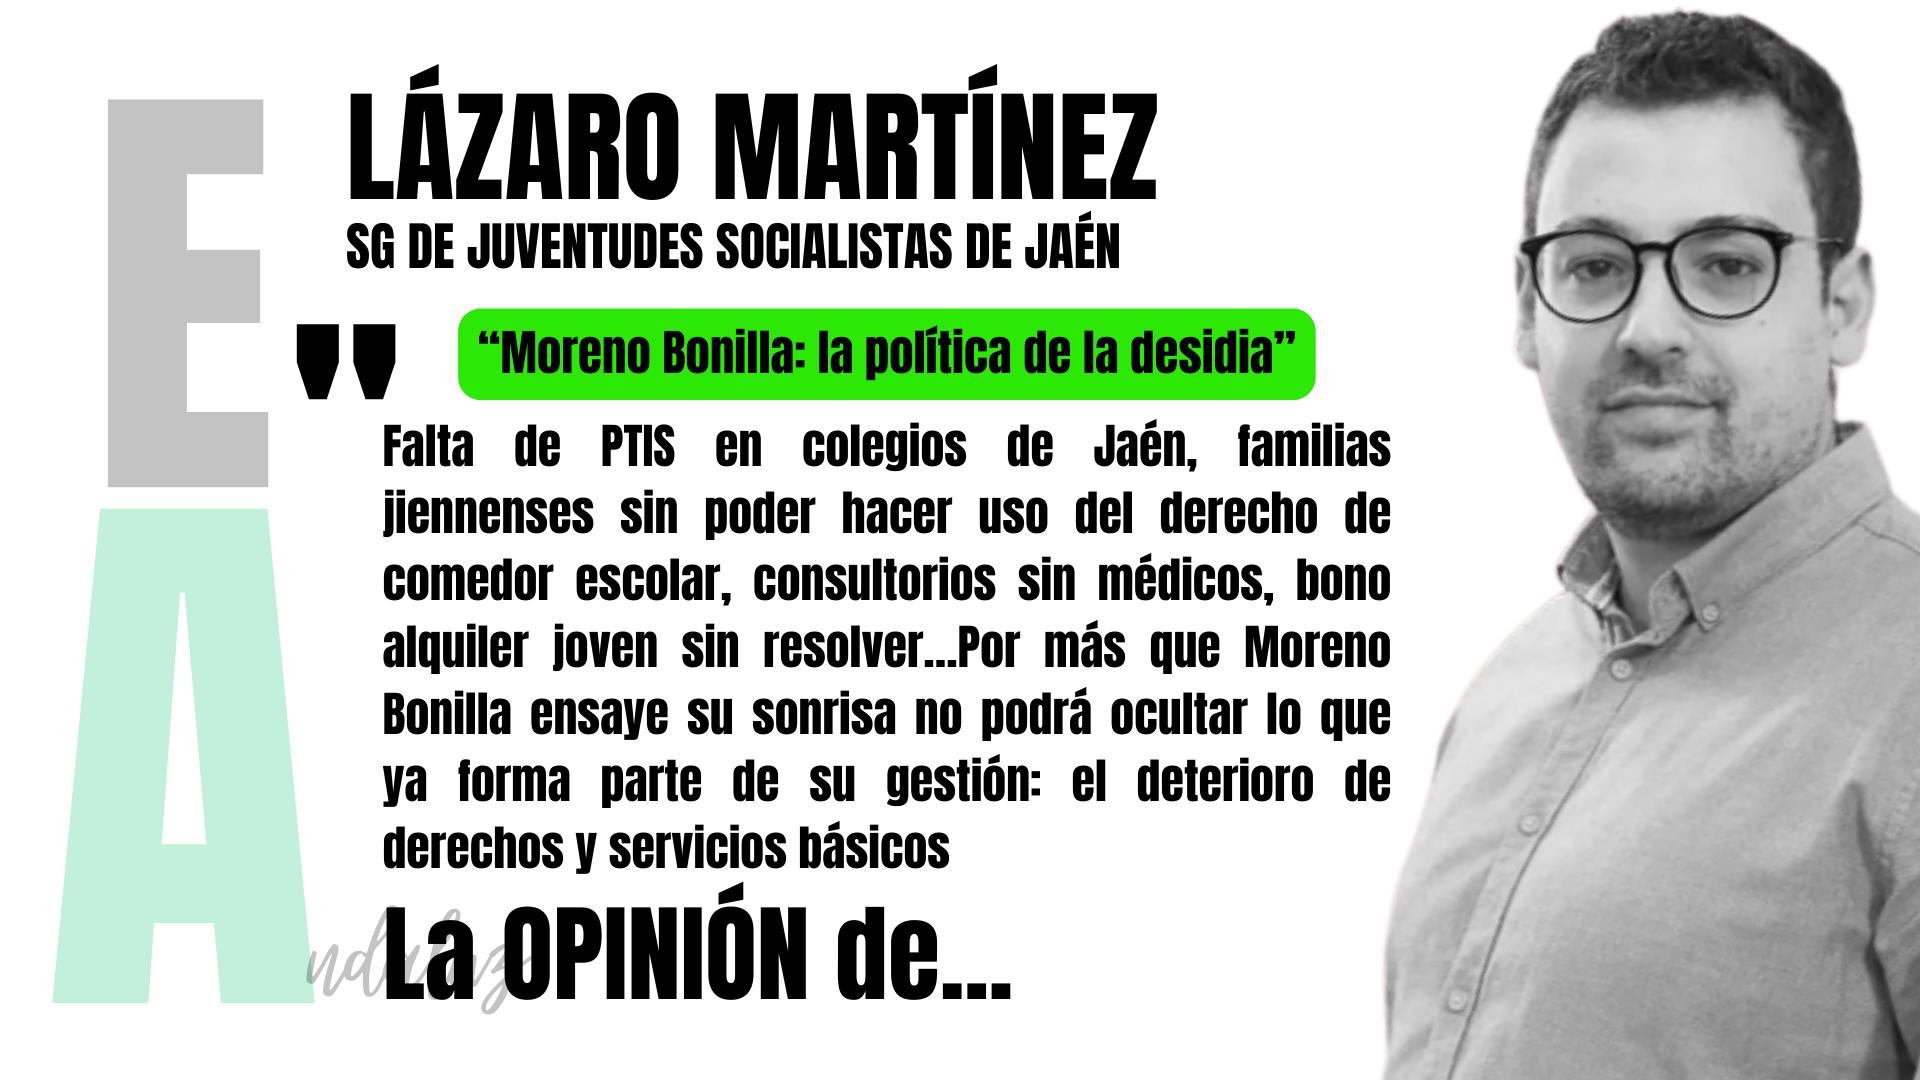 Artículo de opinión de Lázaro Martínez, secretario general de JSA Jaén: "Moreno Bonilla: la política de la desidia".